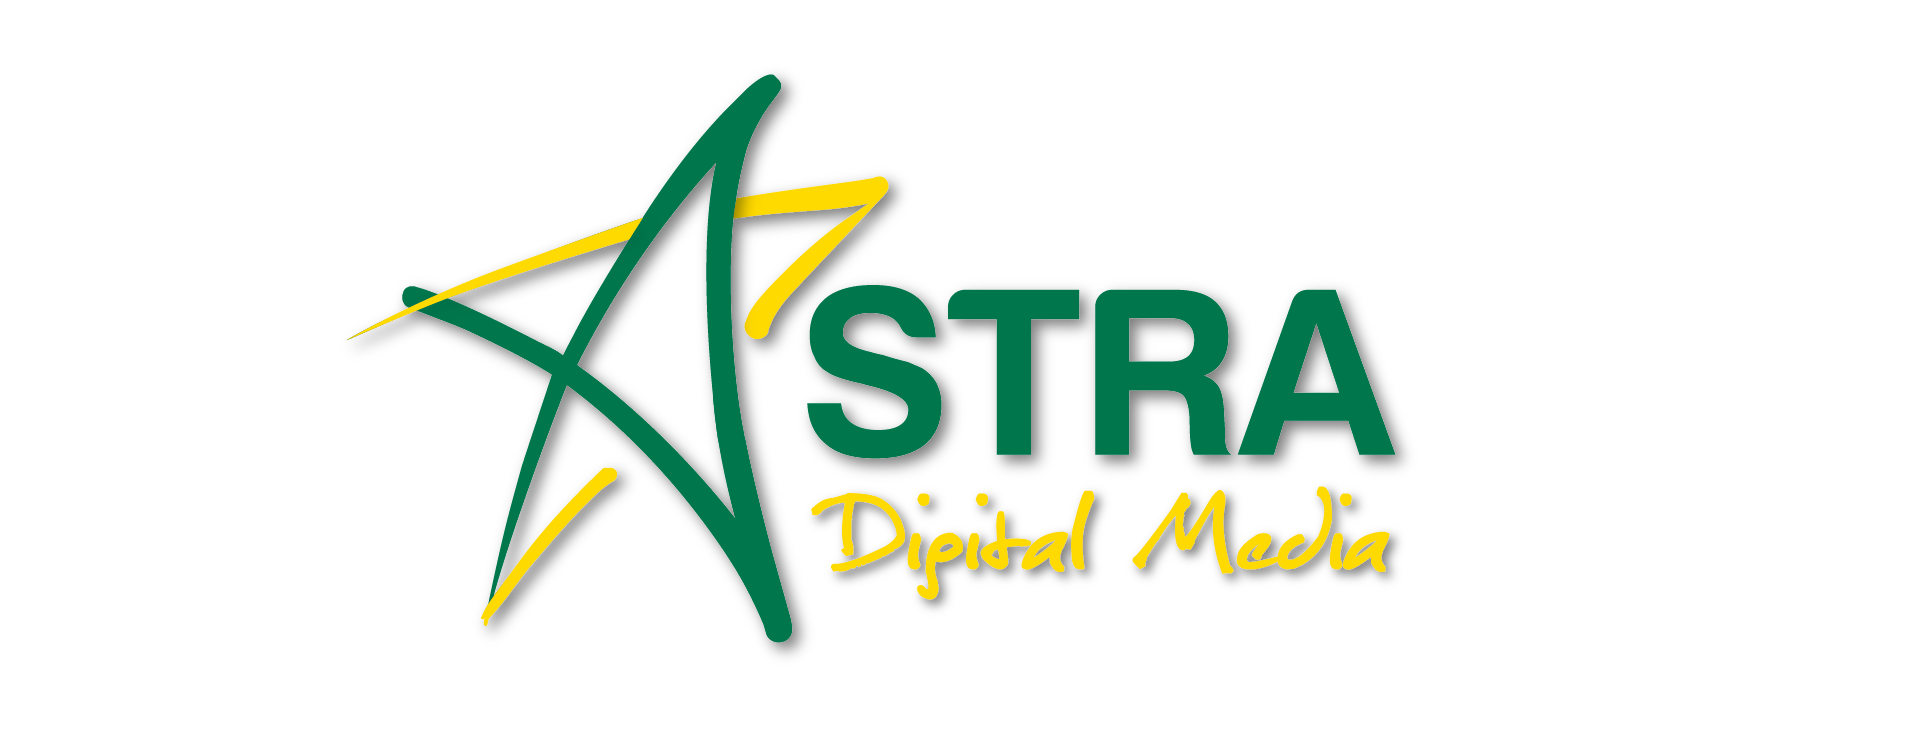 Astra Digital Media